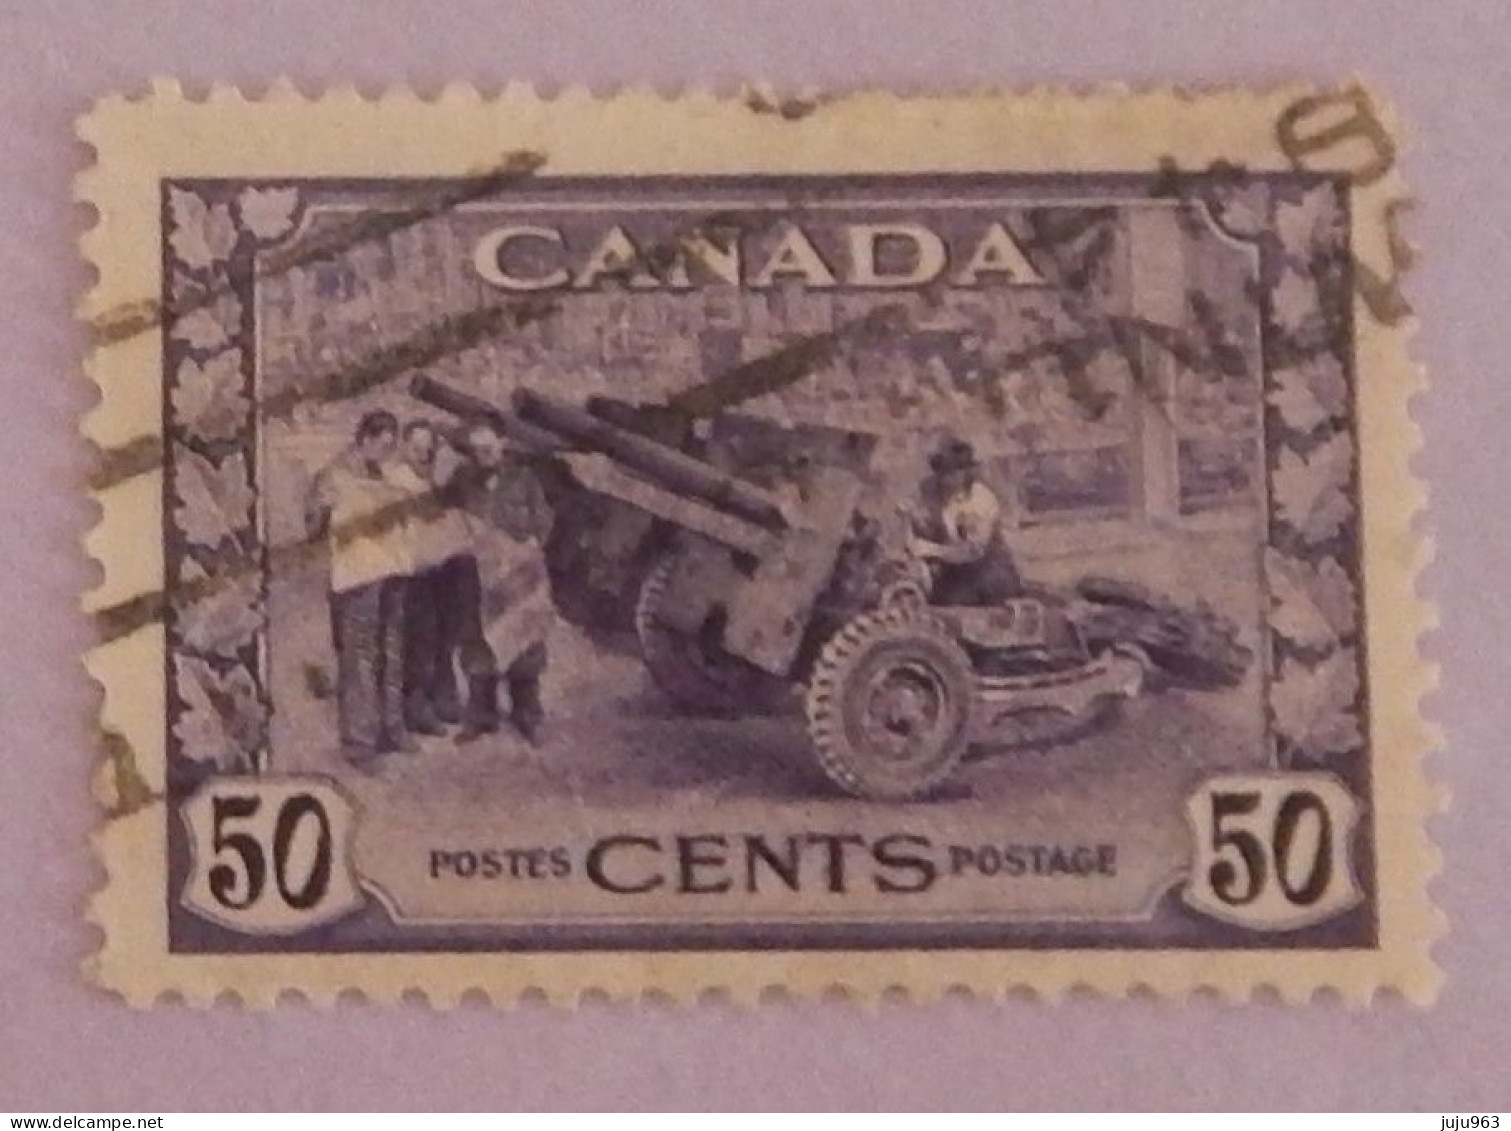 CANADA YT 217 OBLITERE "PIECE D ARTILLERIE" ANNÉES 1943/1946 - Gebraucht